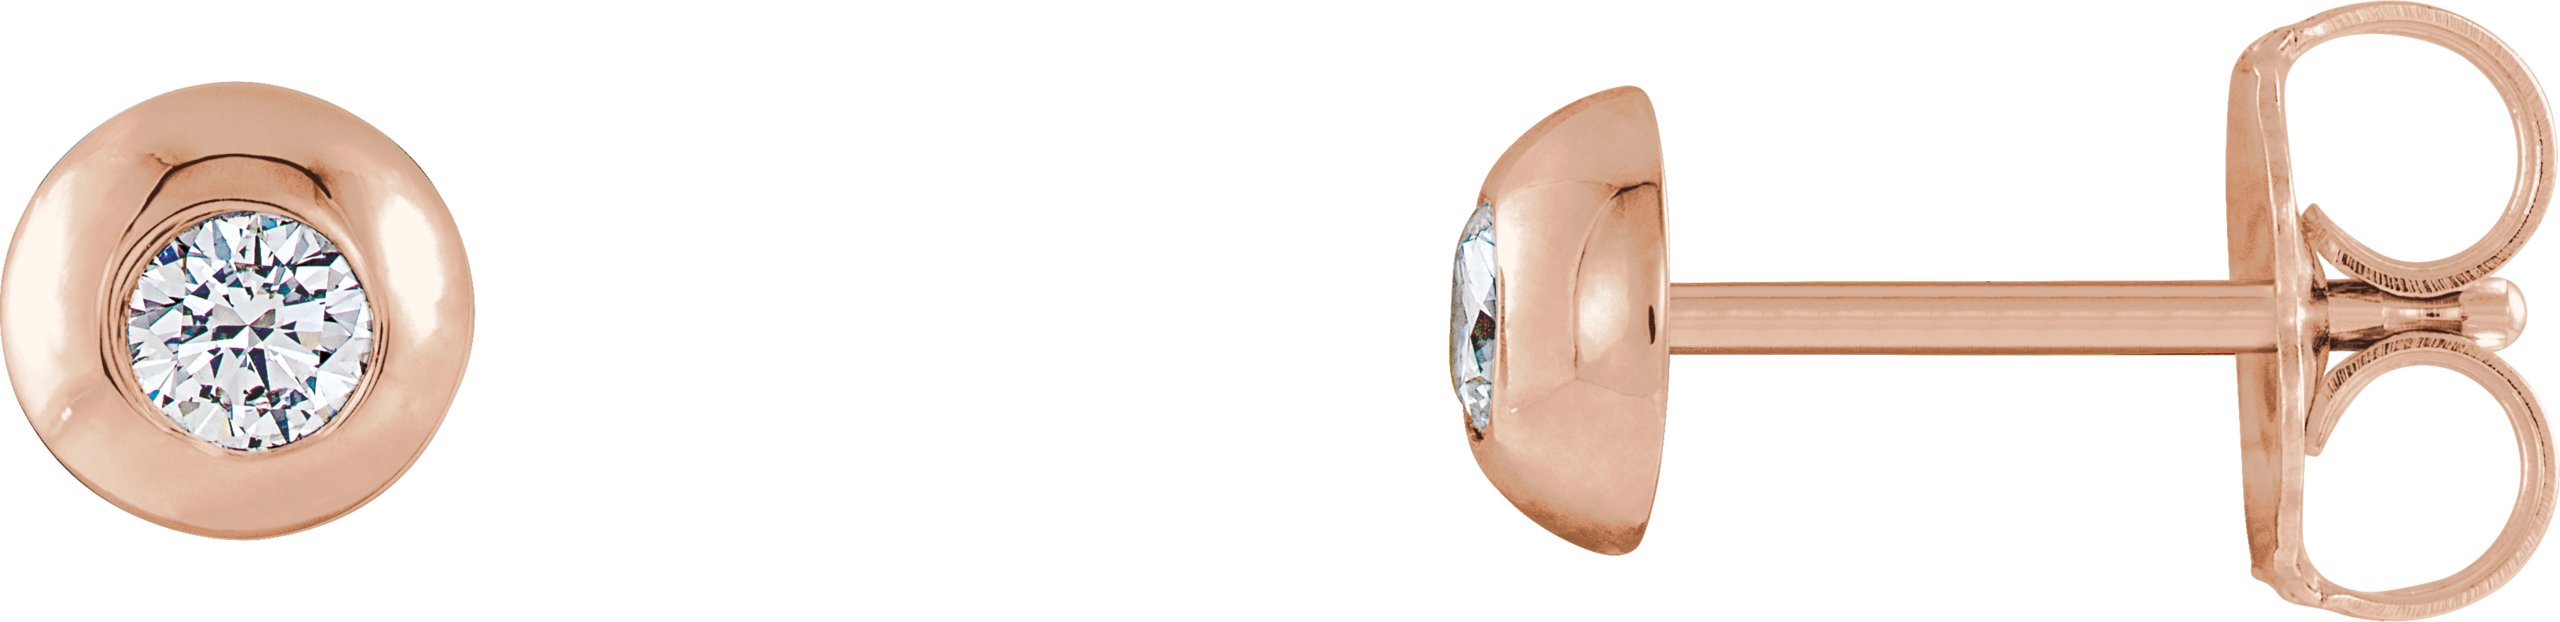 14K Rose 1/8 CTW Natural Diamond Domed Stud Earring